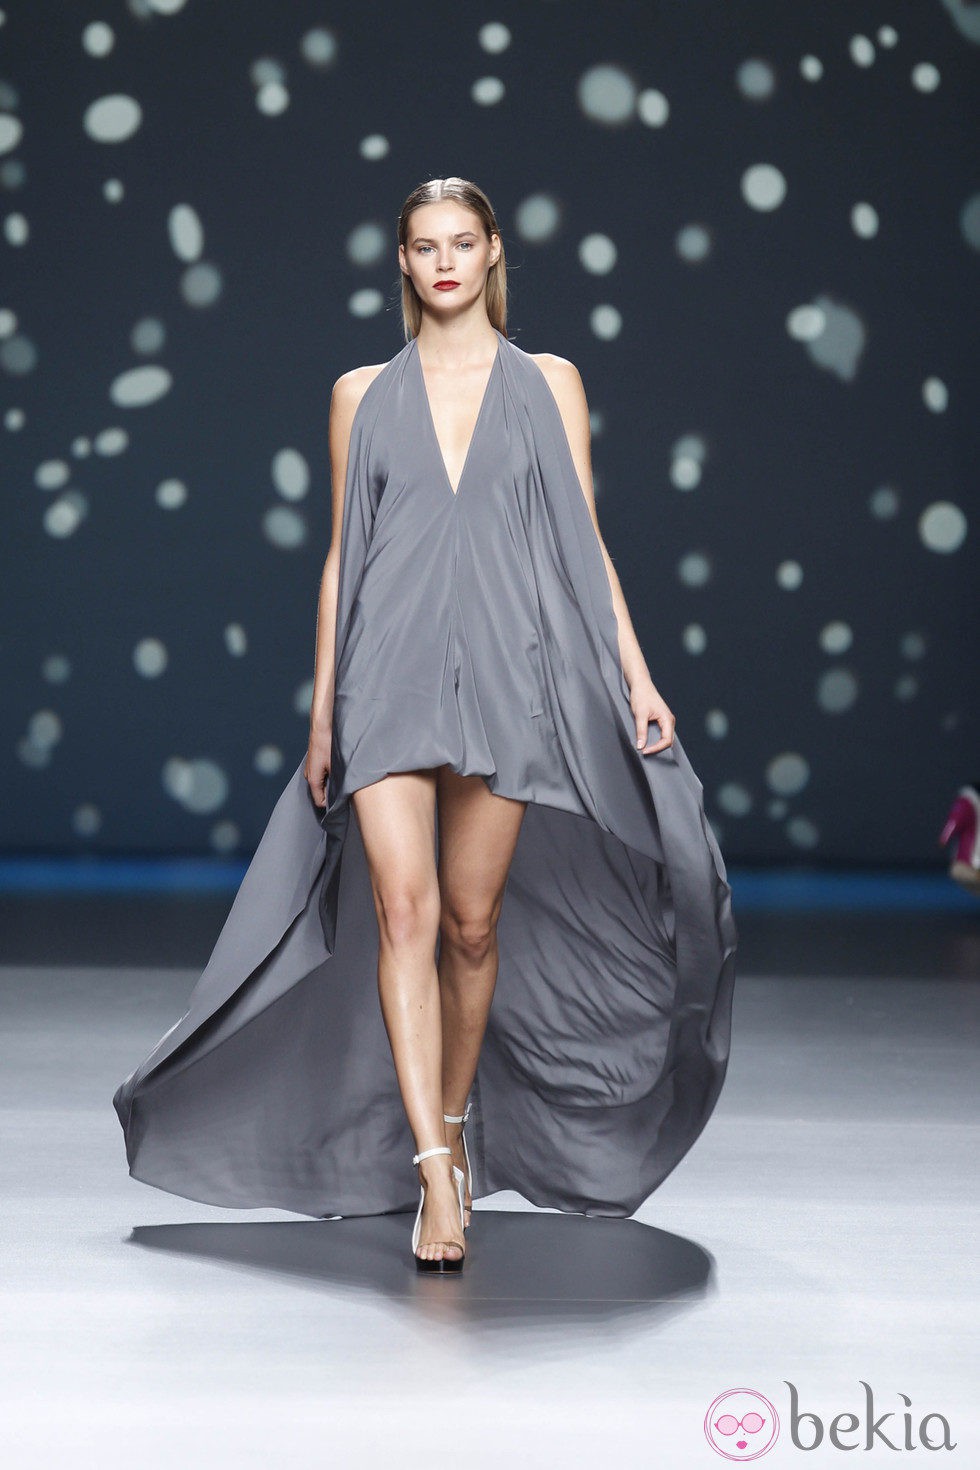 Vestido gris abombado con cola larga de la colección primavera-verano 2013 de Amaya Arzuaga